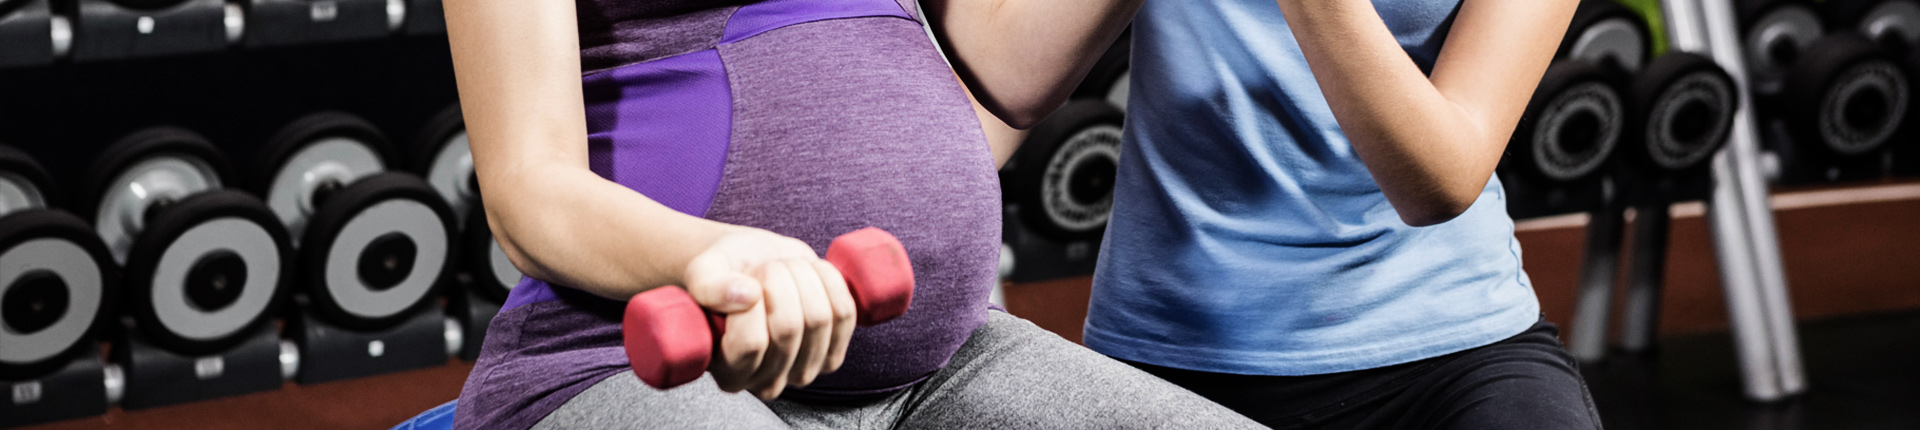 Czy w ciąży warto trenować?